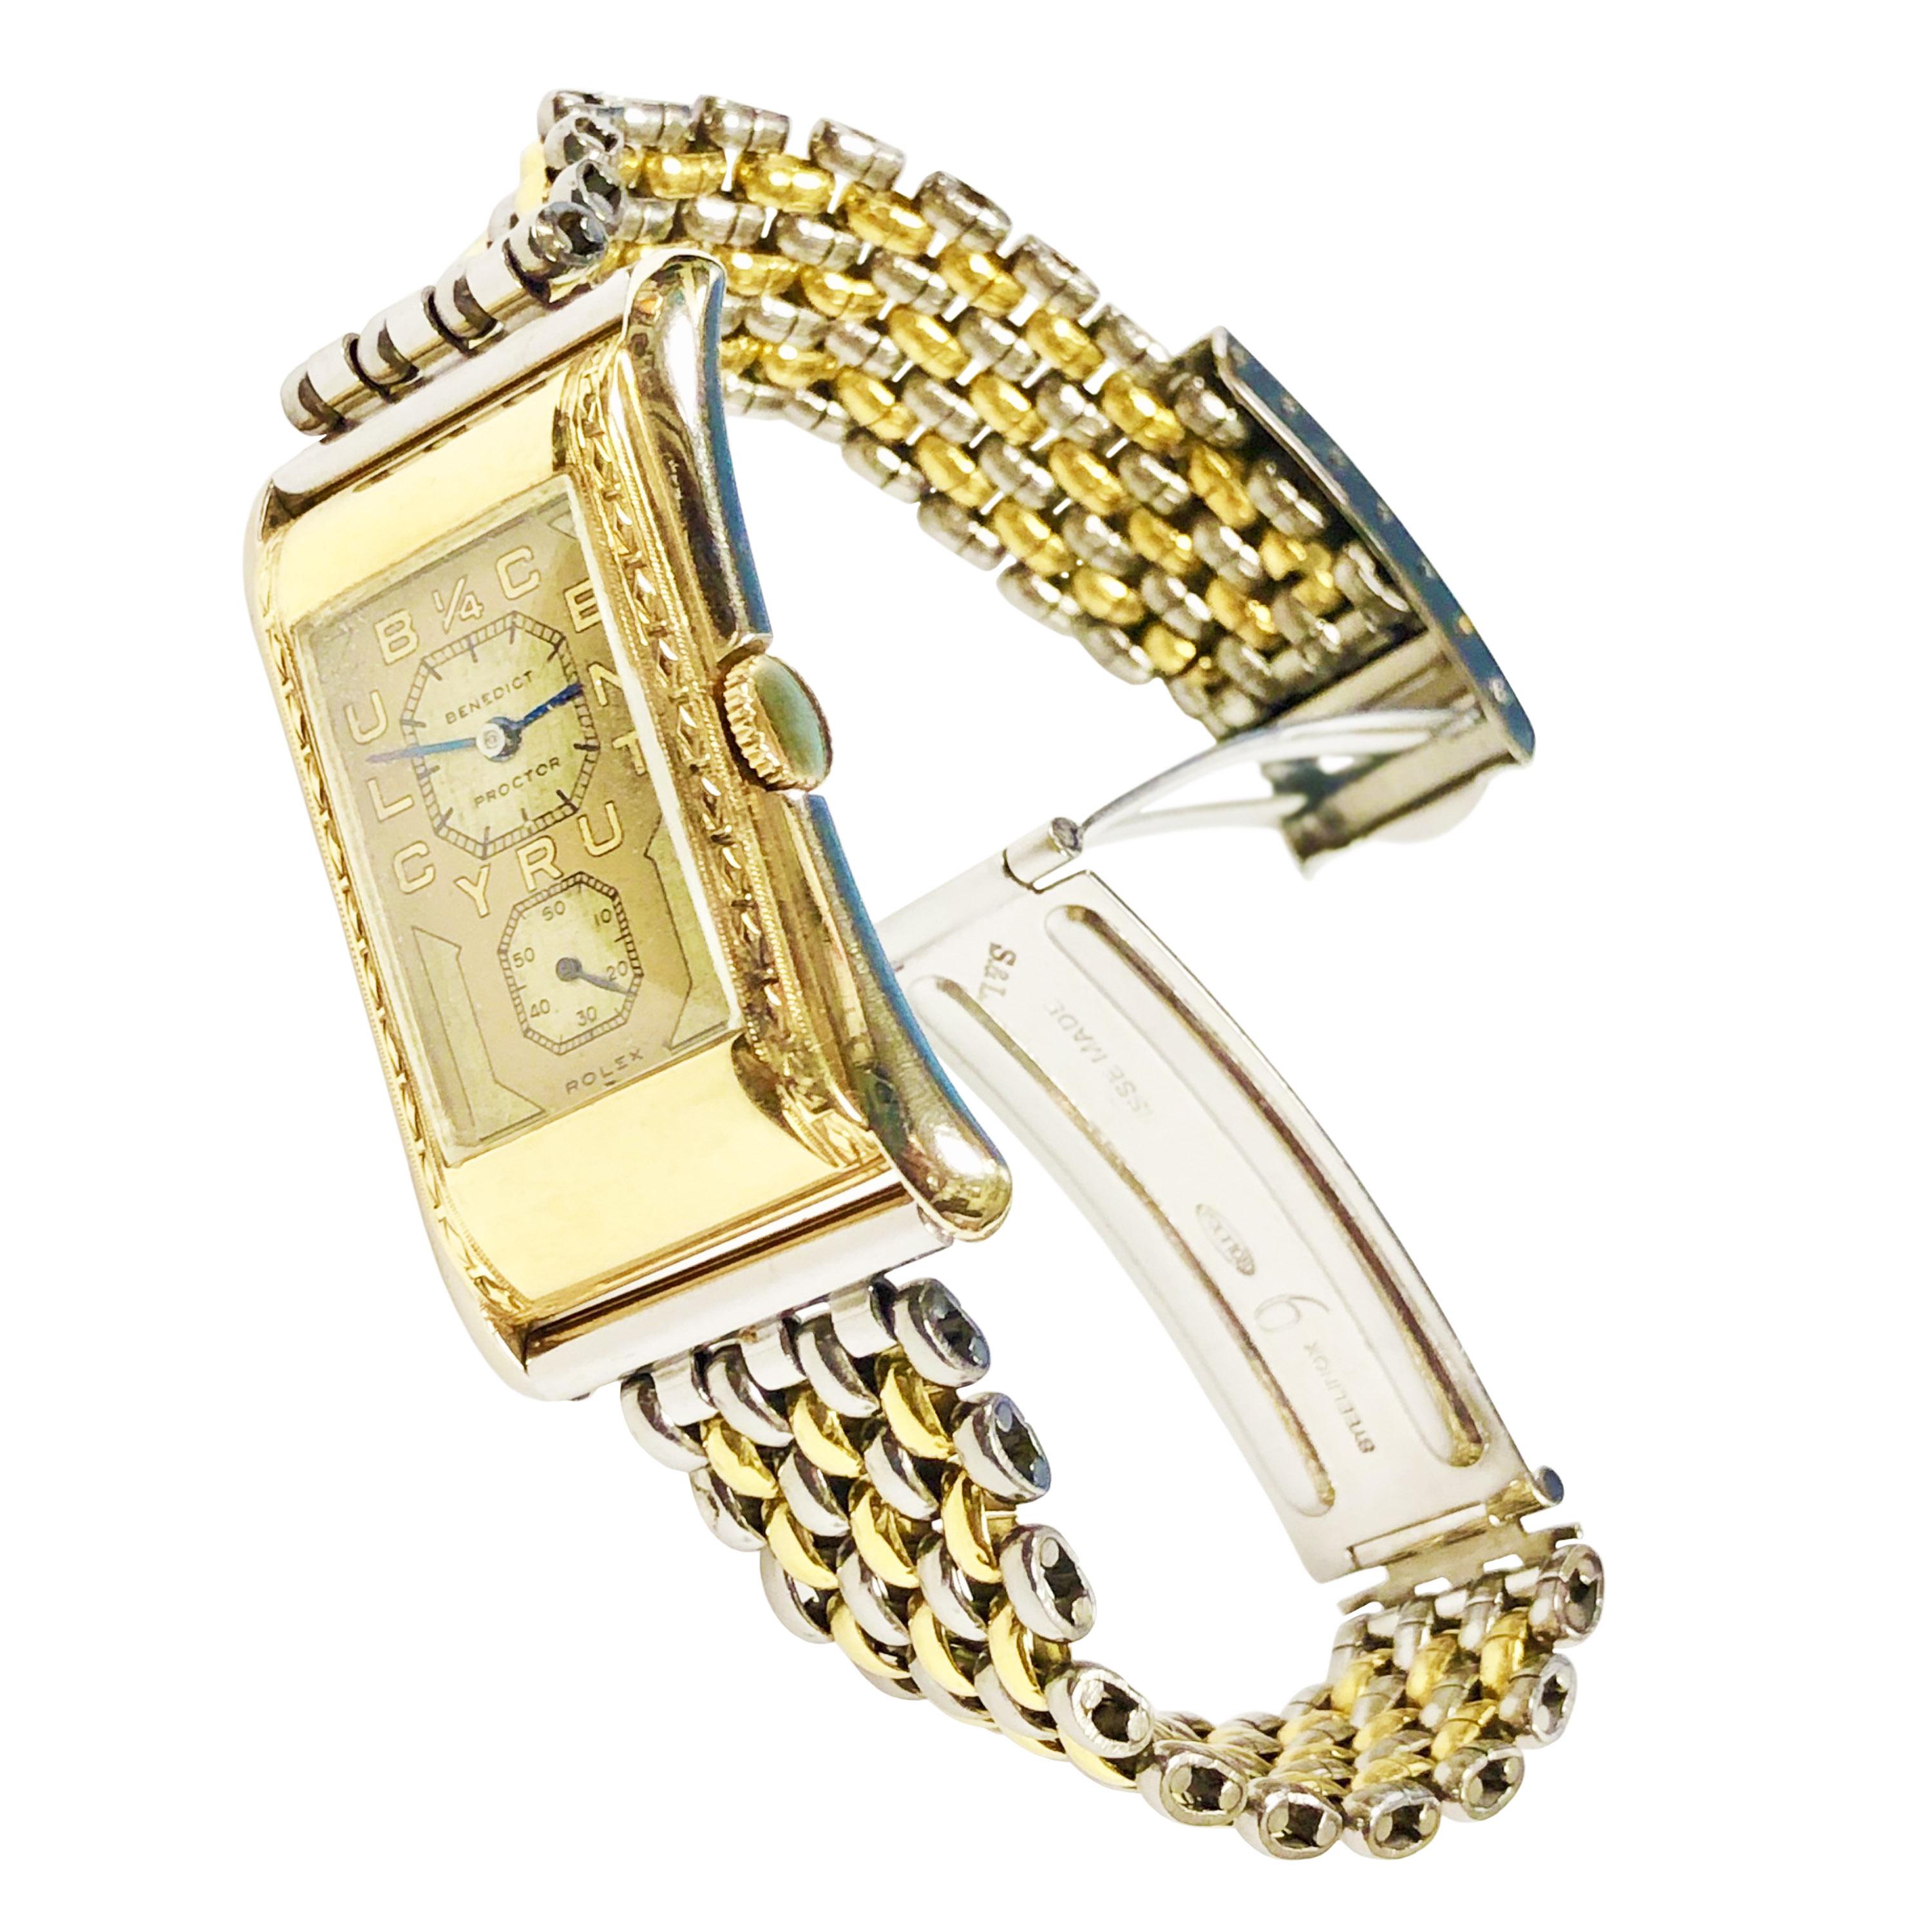 Circa 1930er Jahre Rolex ( Prince ) Ref 971 Eaton Quarter Century Club Dr's Wrist Watch:: präsentiert für 25 Jahre Dienst mit Eaton Kaufhäuser in Kanada. 43 X 24 MM Two Tone 14K Weiß- und Gelbgold Flared 2 Stück Fall. mechanisches Uhrwerk mit 18